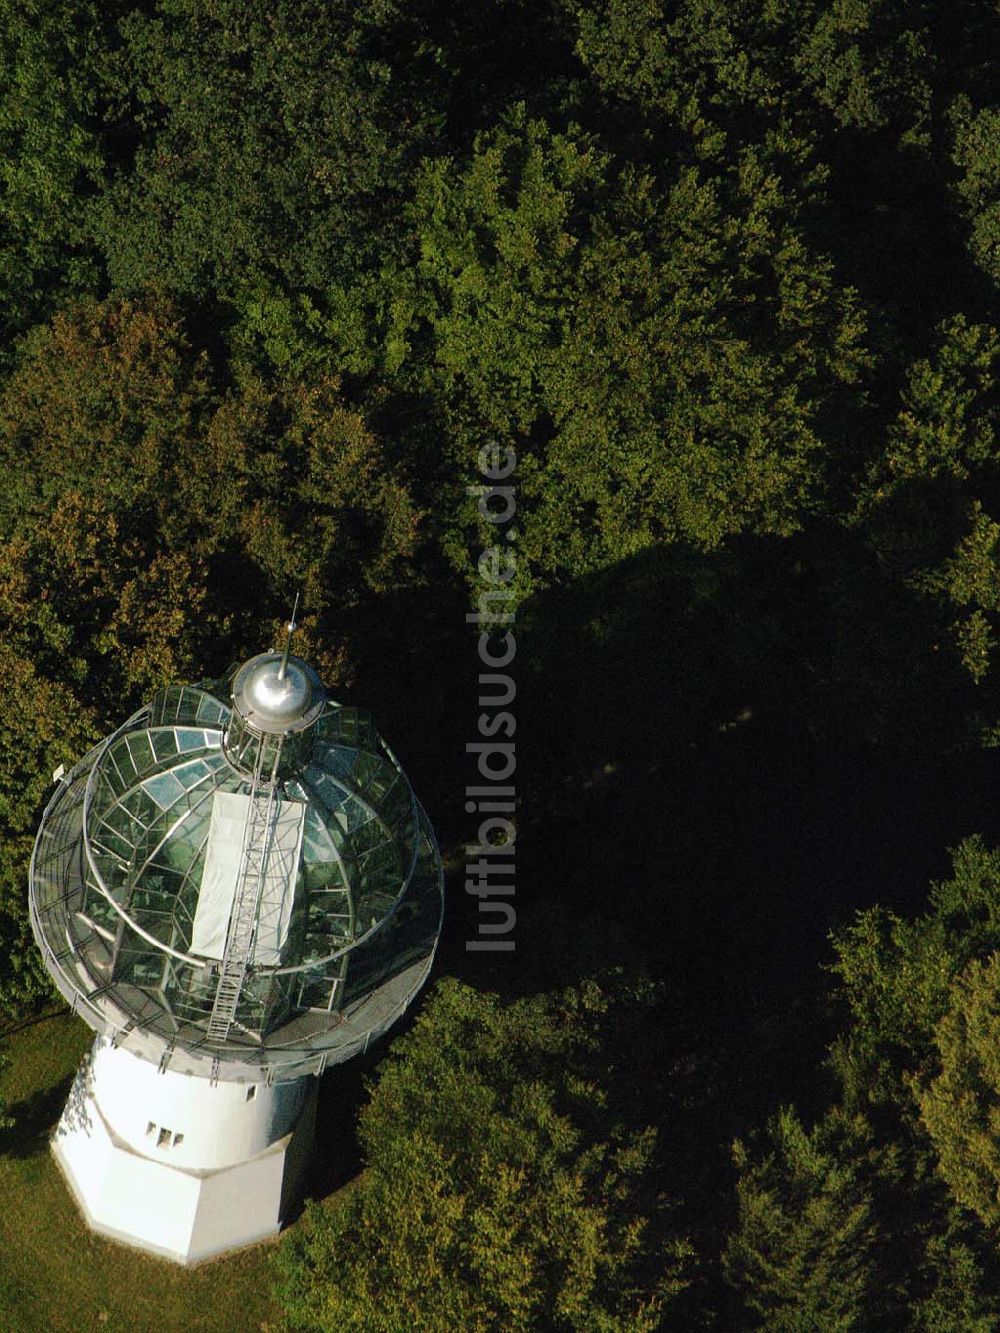 Luftbild Wuppertal - Blick auf umgebauten Wasserturm westlich in Wuppertal